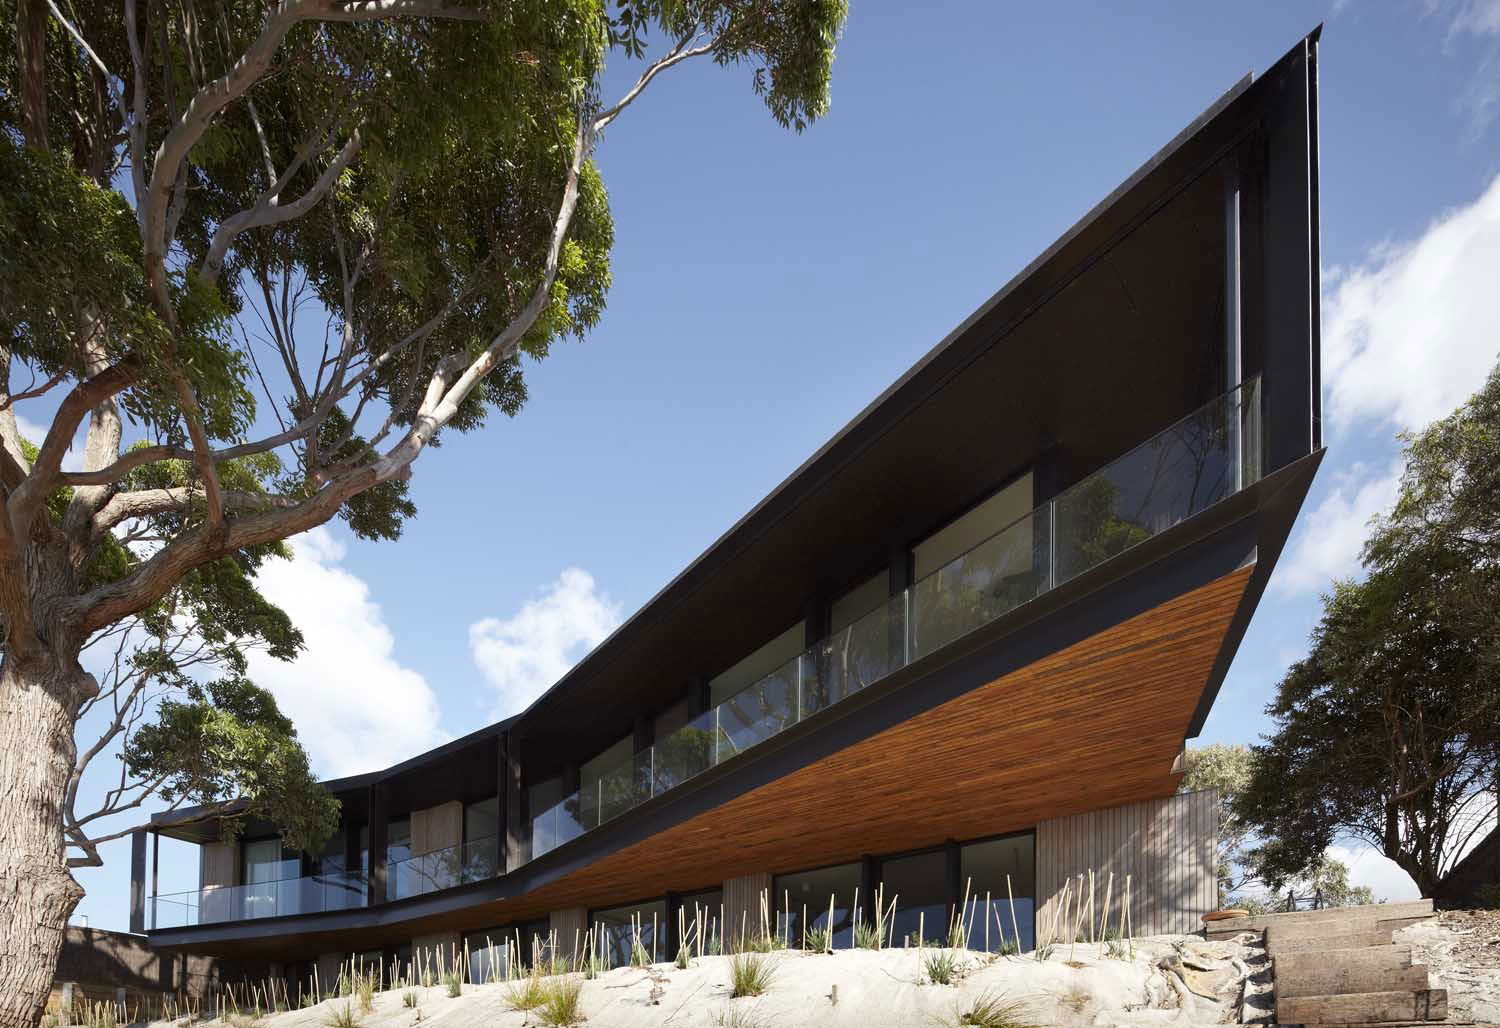 Bluff-House-by-Inarc-Architects Australisk arkitektur och några vackra hus för att inspirera dig